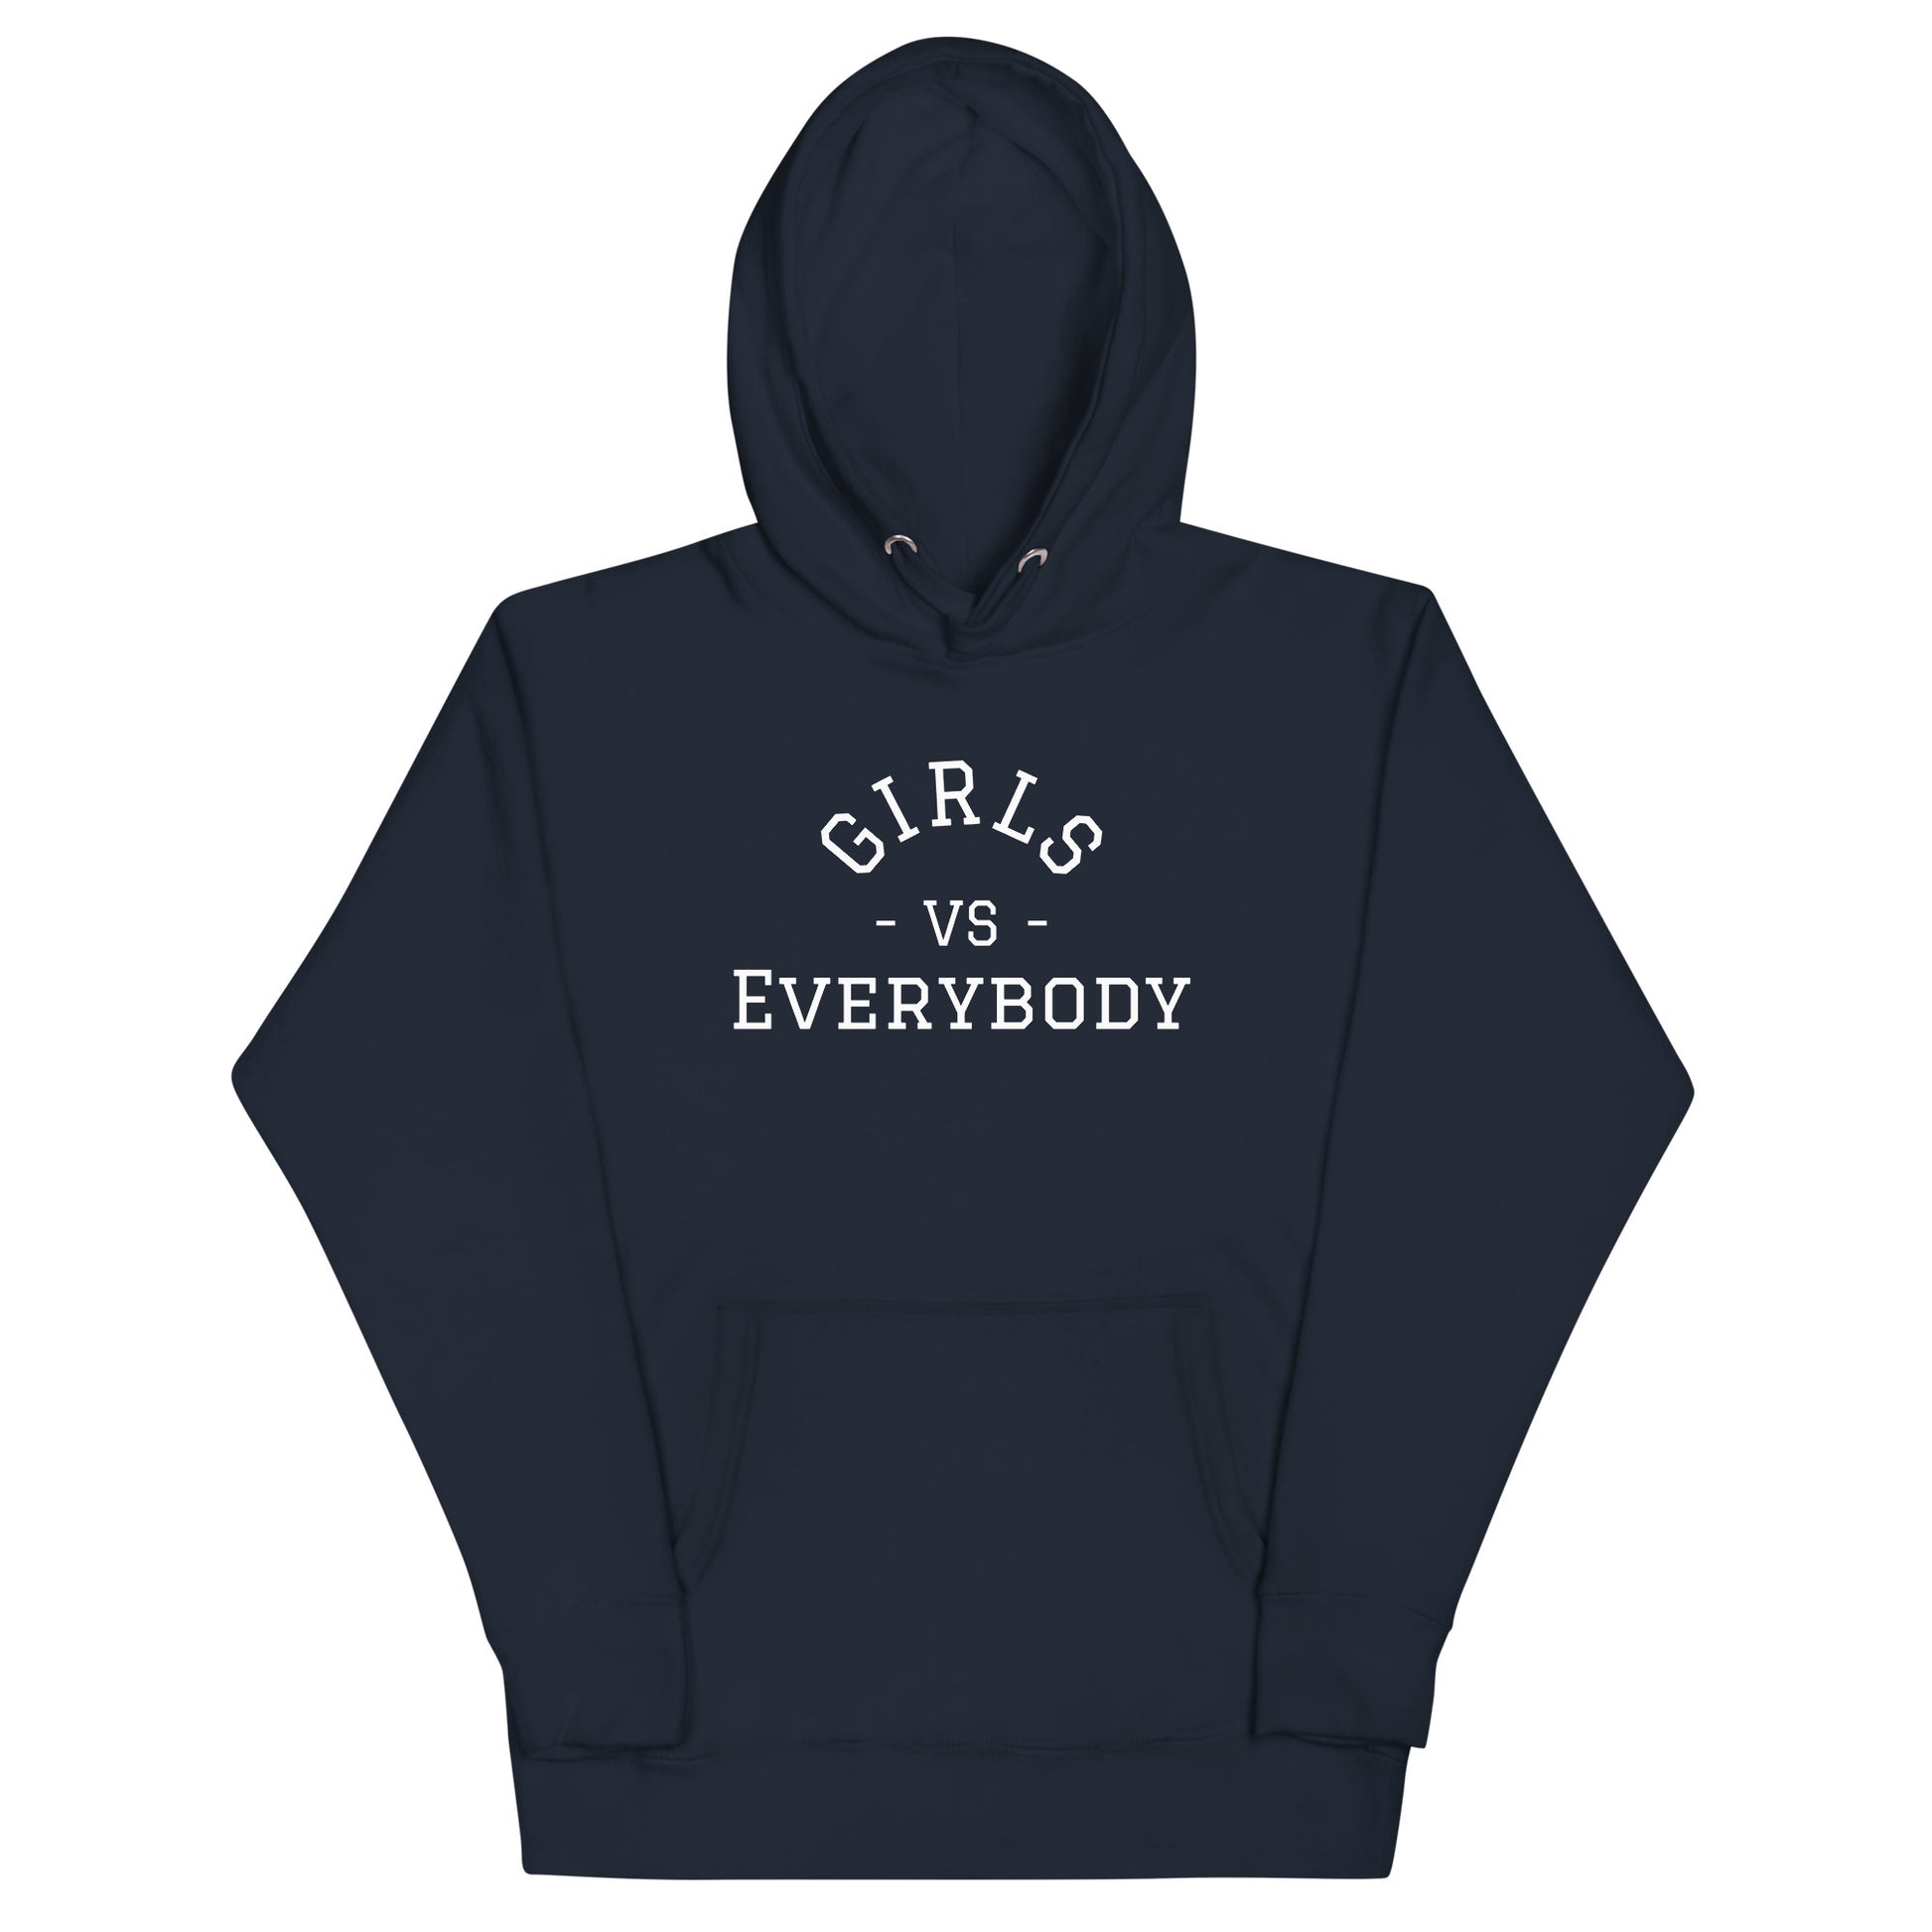 Women's navy blue hoodie sweatshirt that says 'Girls VS Everybody'